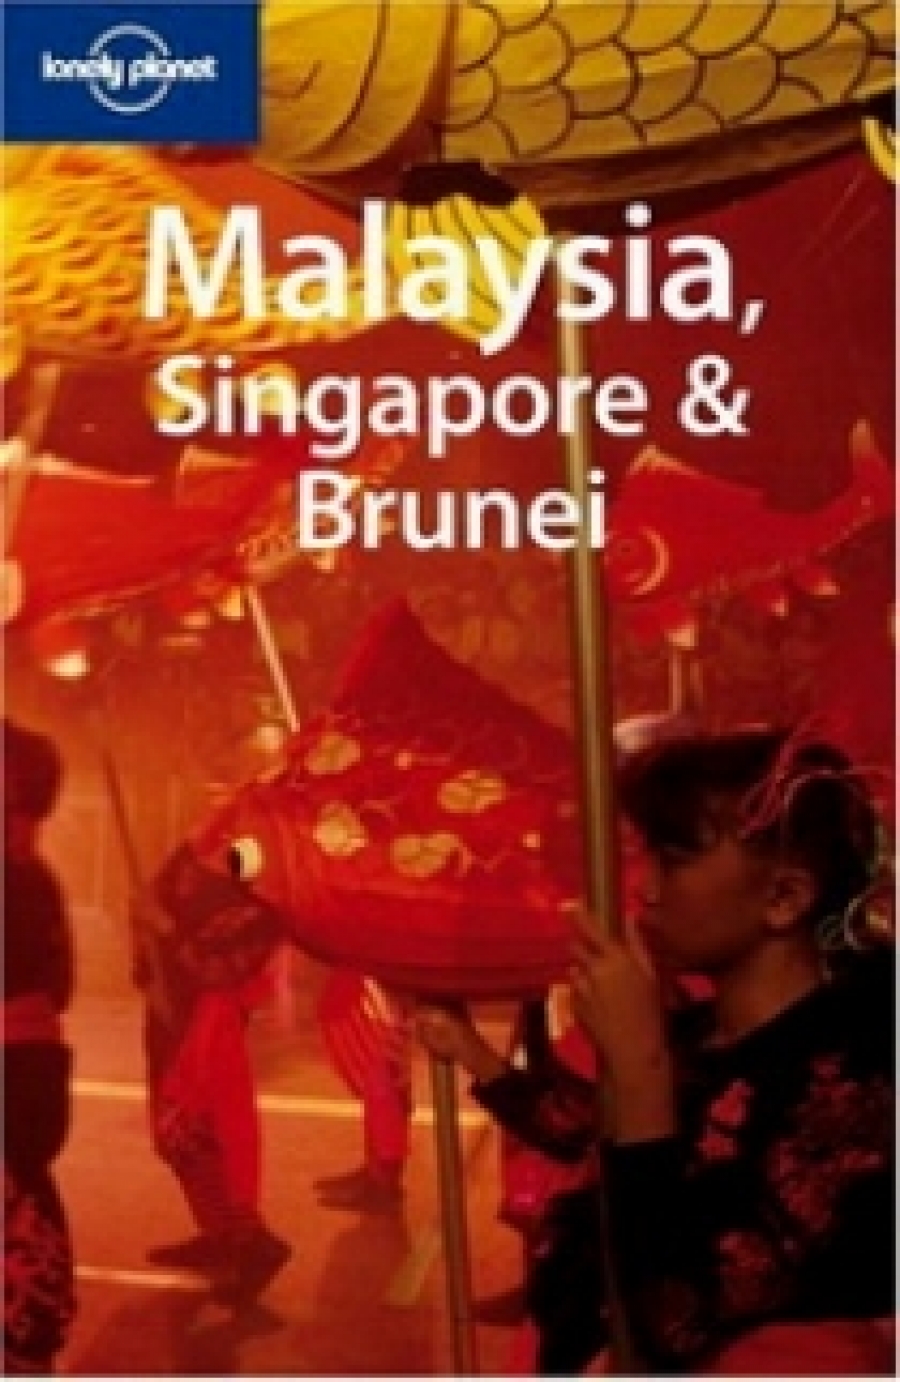 Simon R. Malaysia Singapore Brunei 10 Edition 